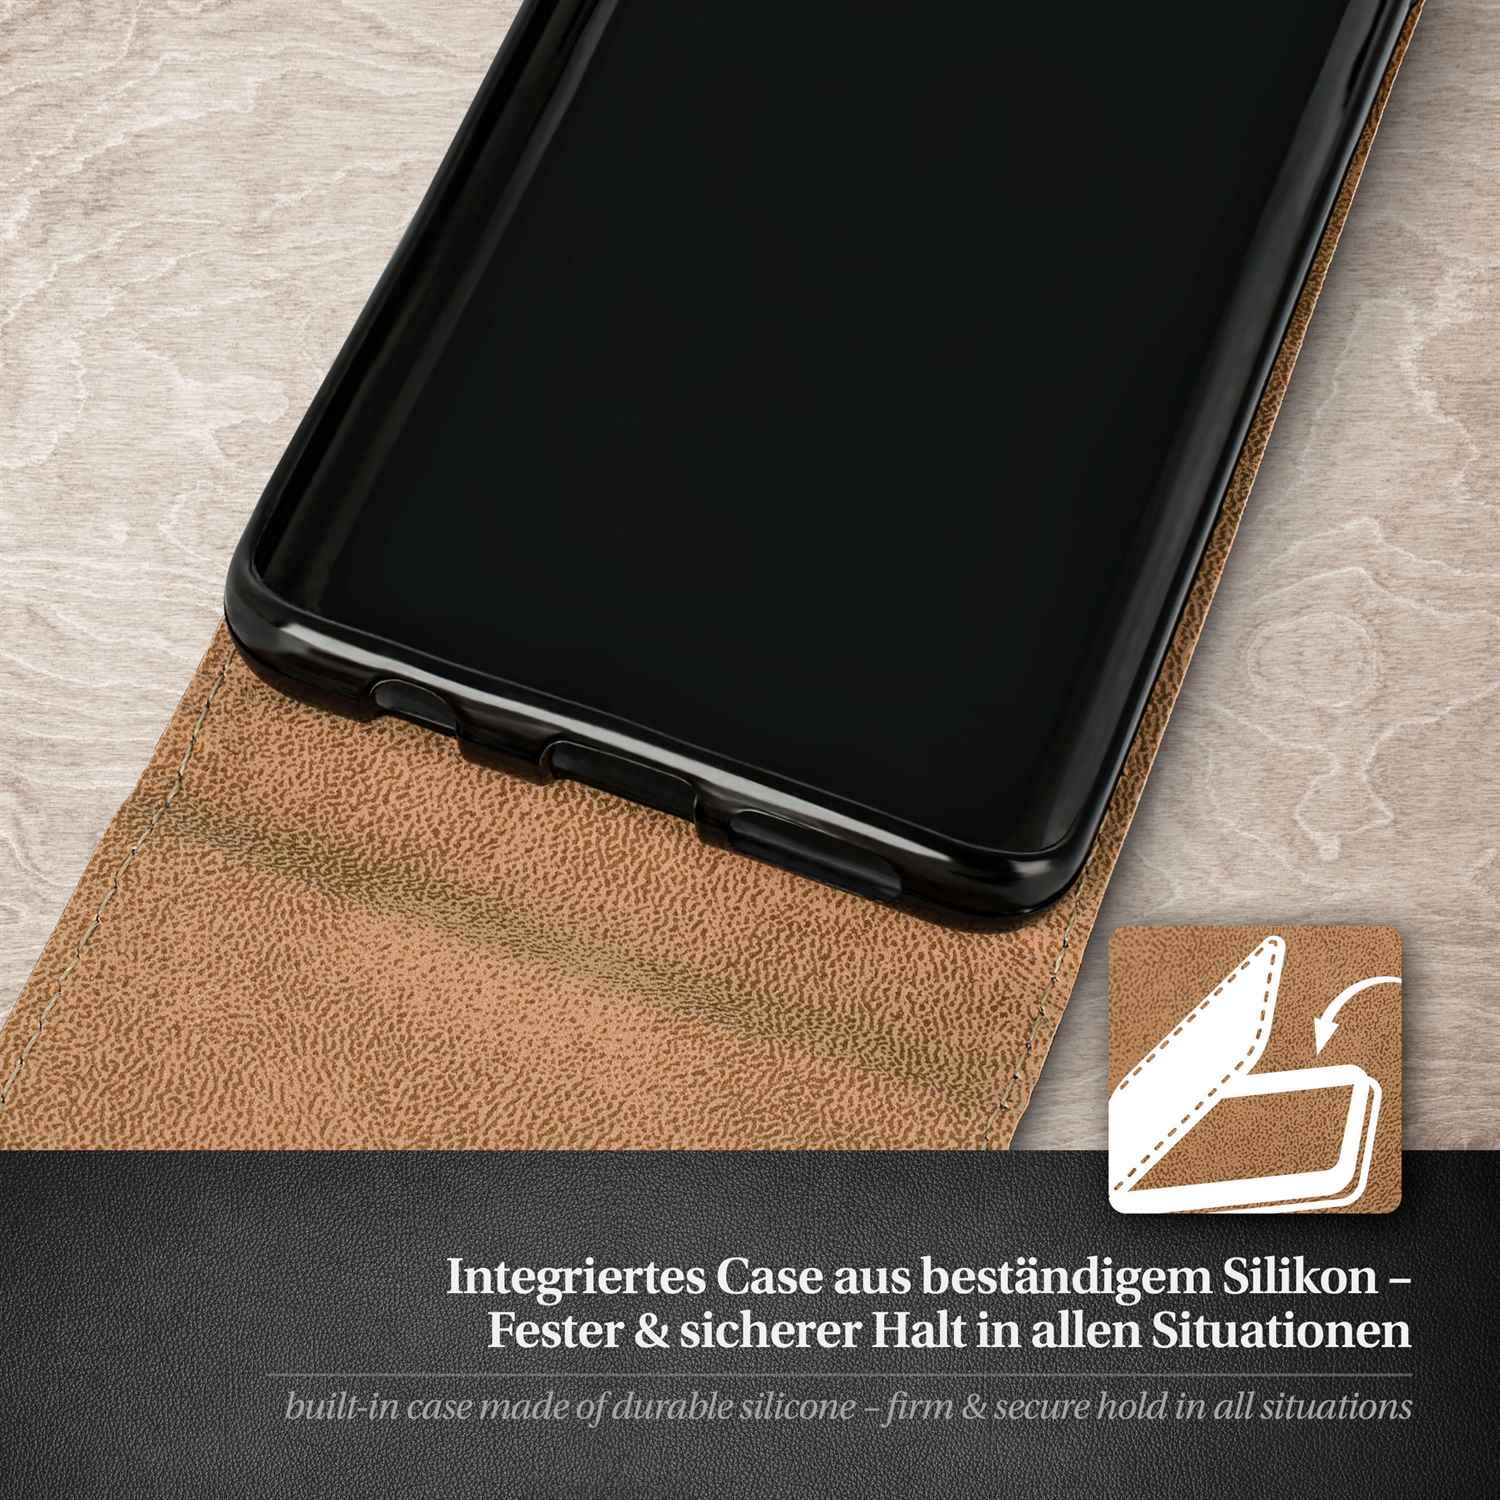 MOEX Flip Case, Flip Cover, Huawei, Deep-Black Honor 5C